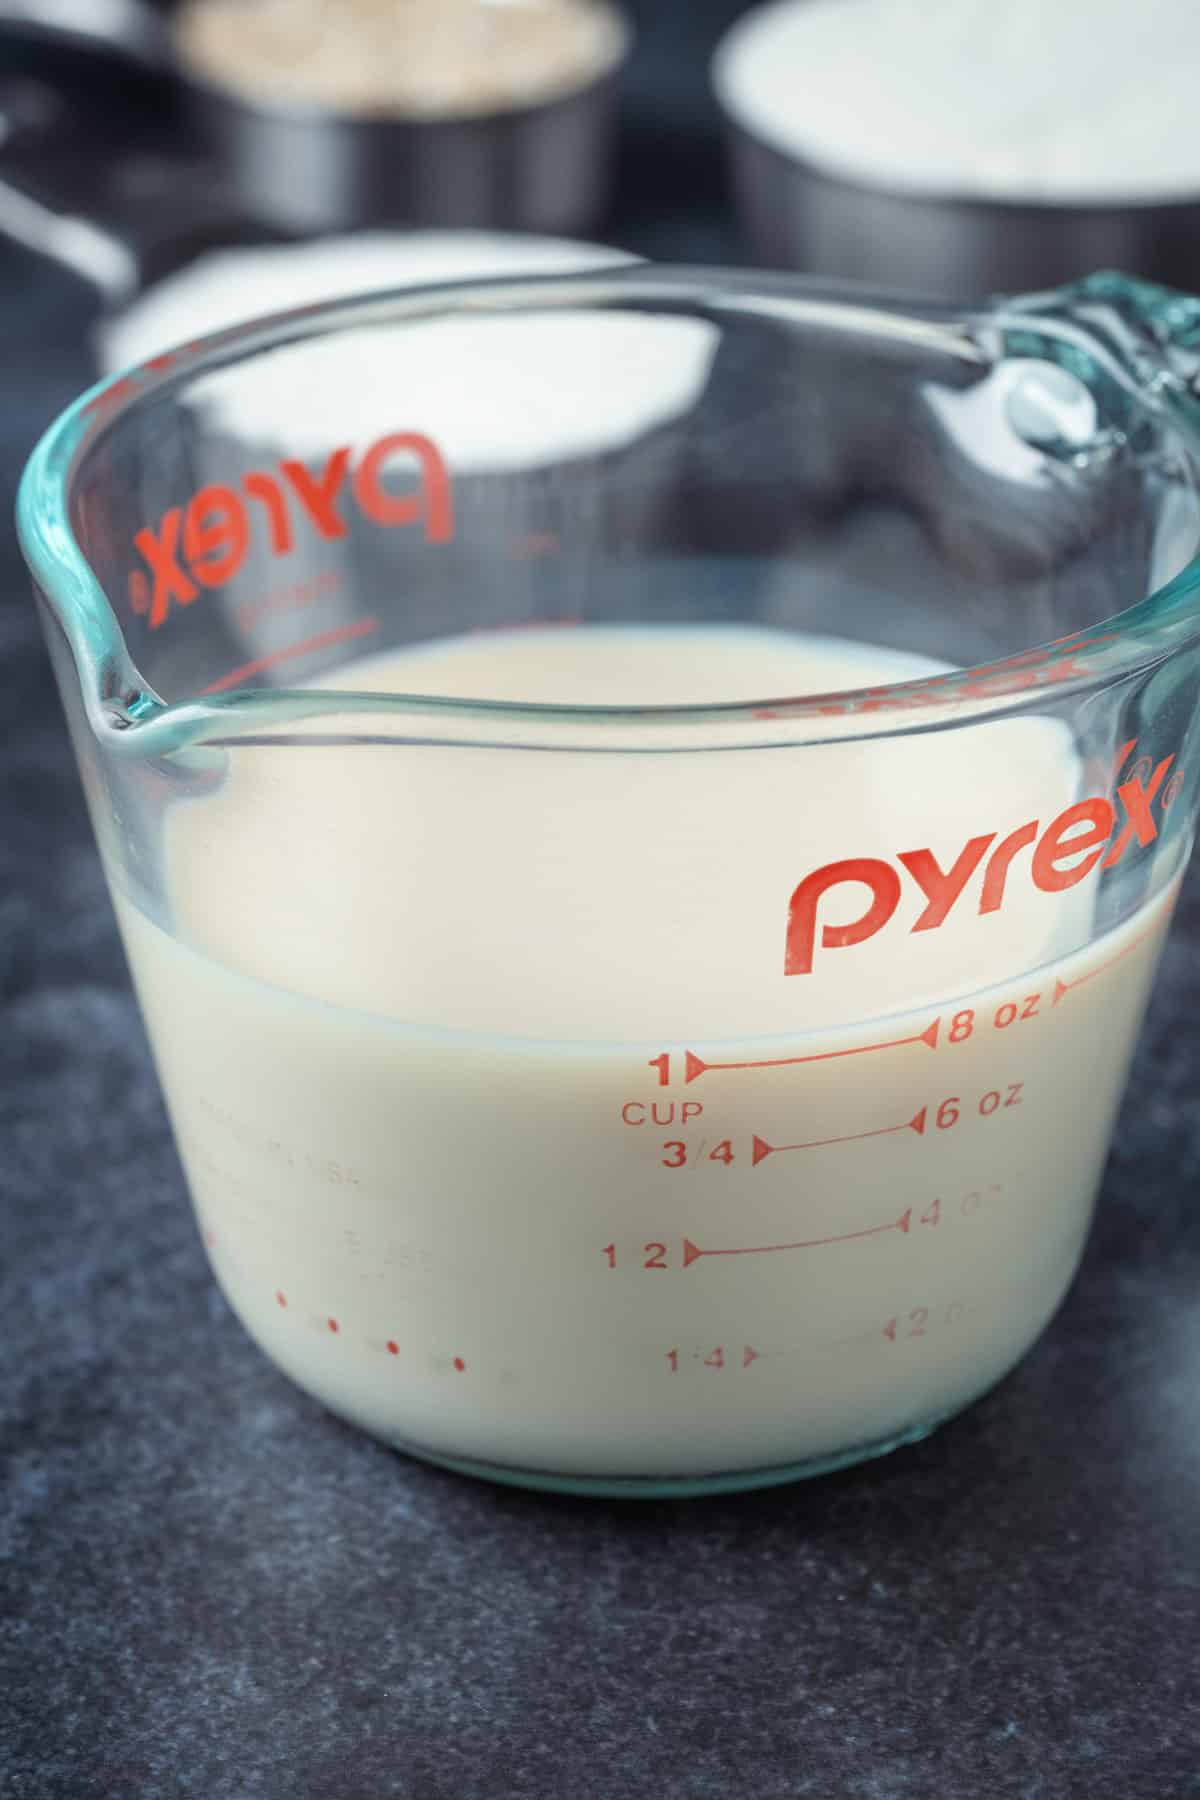 Sojino mlijeko u posudi za mjerenje.